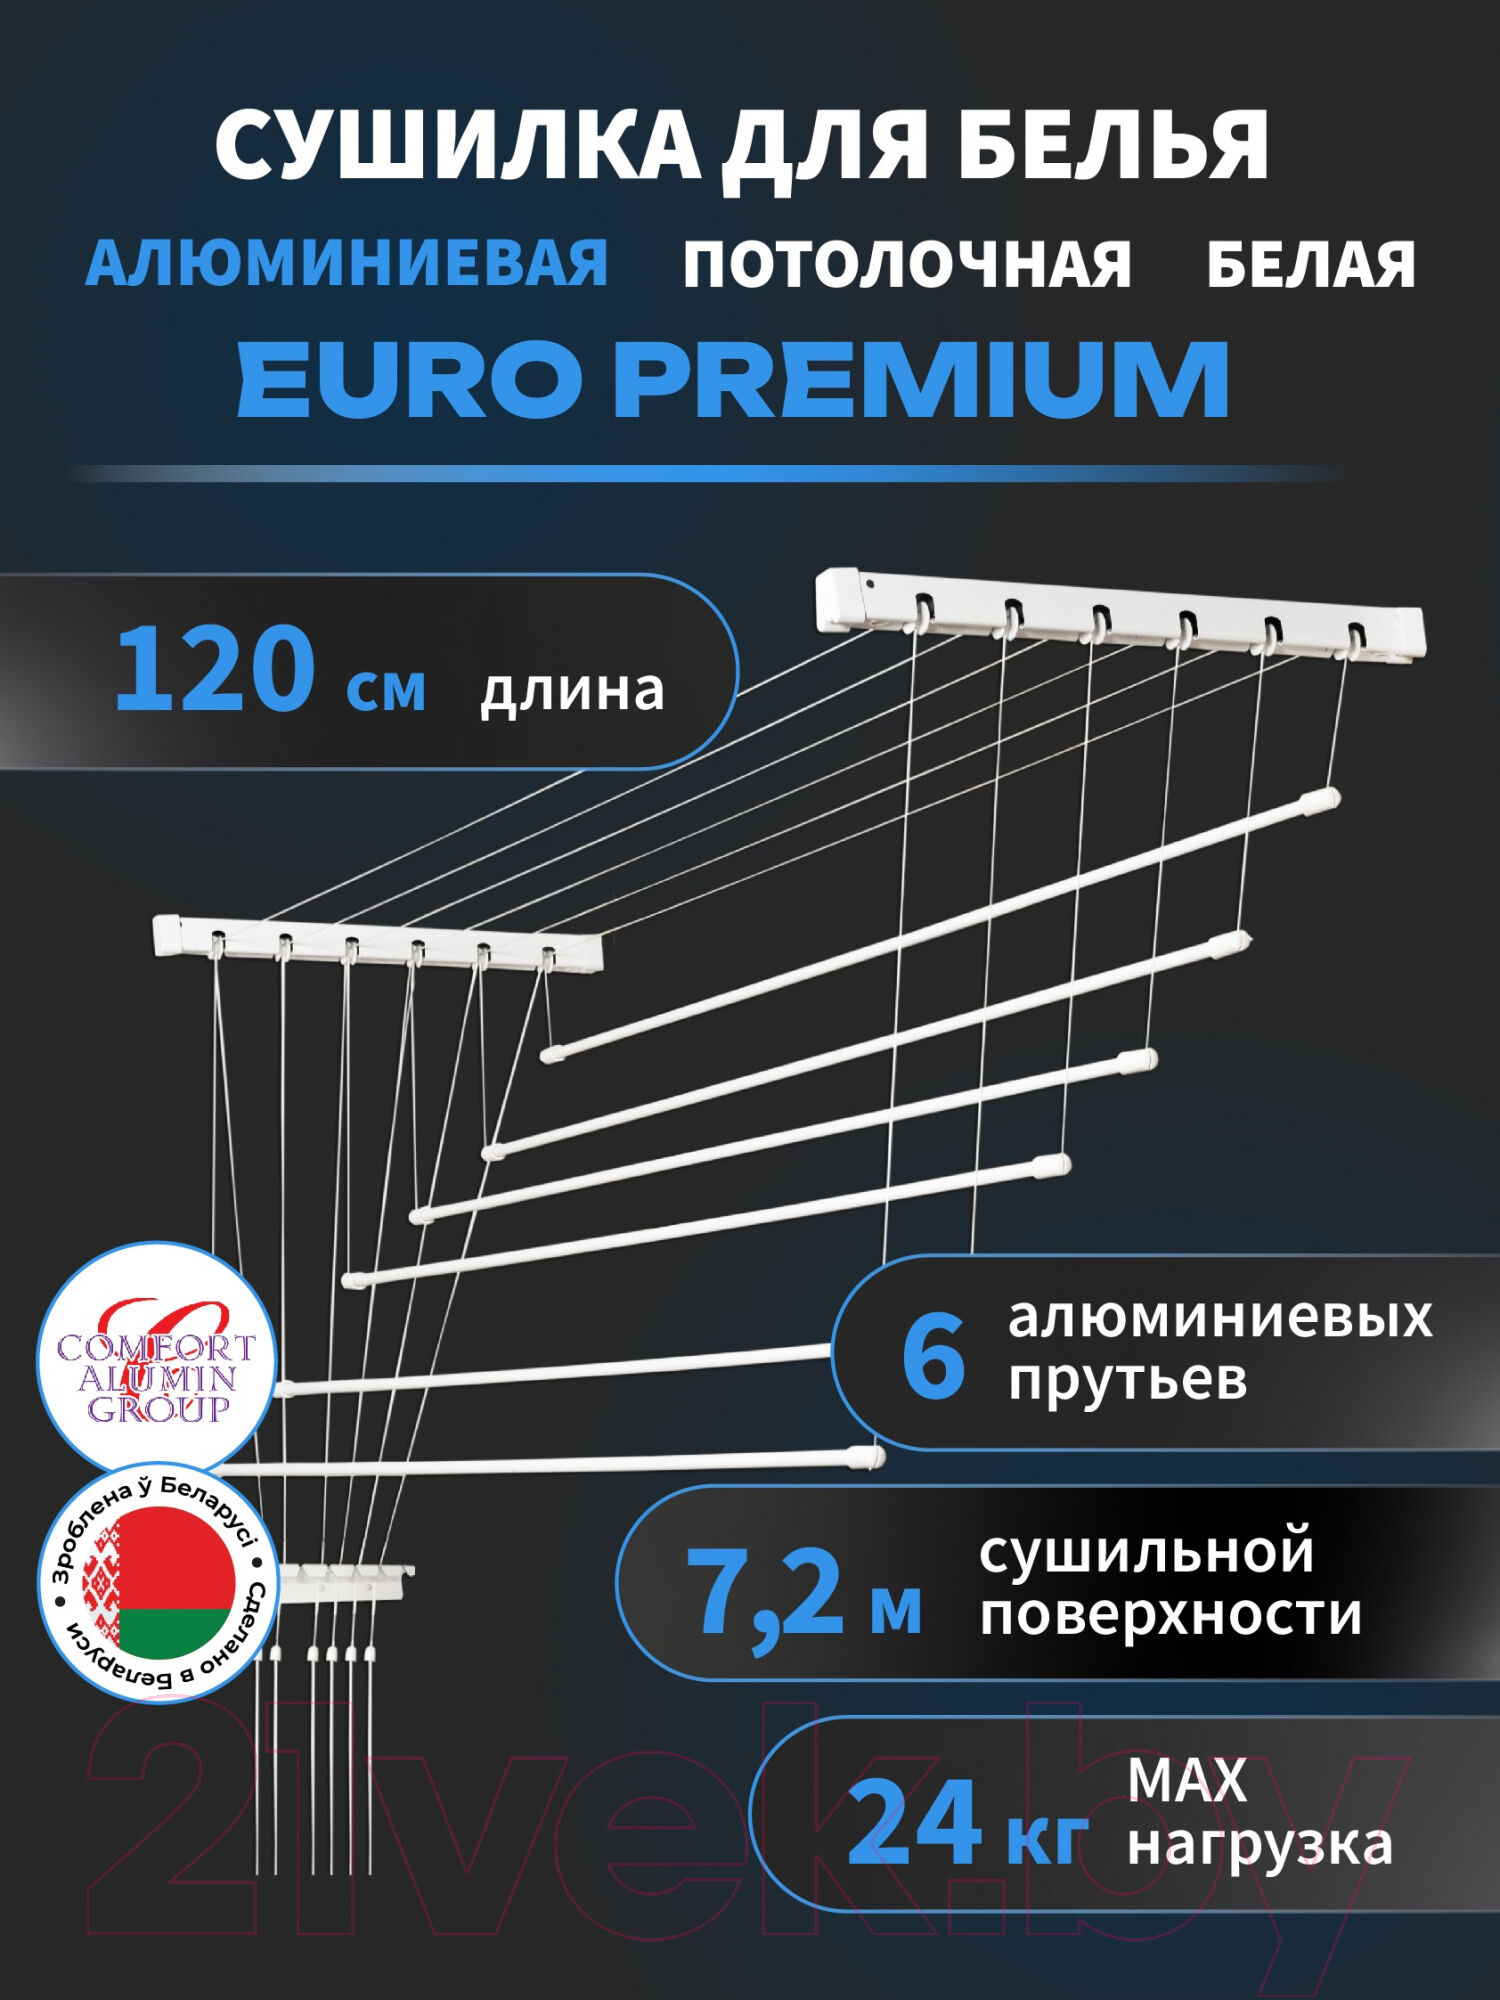 Сушилка для белья Comfort Alumin Group Euro Premium Потолочная 6 прутьев 120см 2